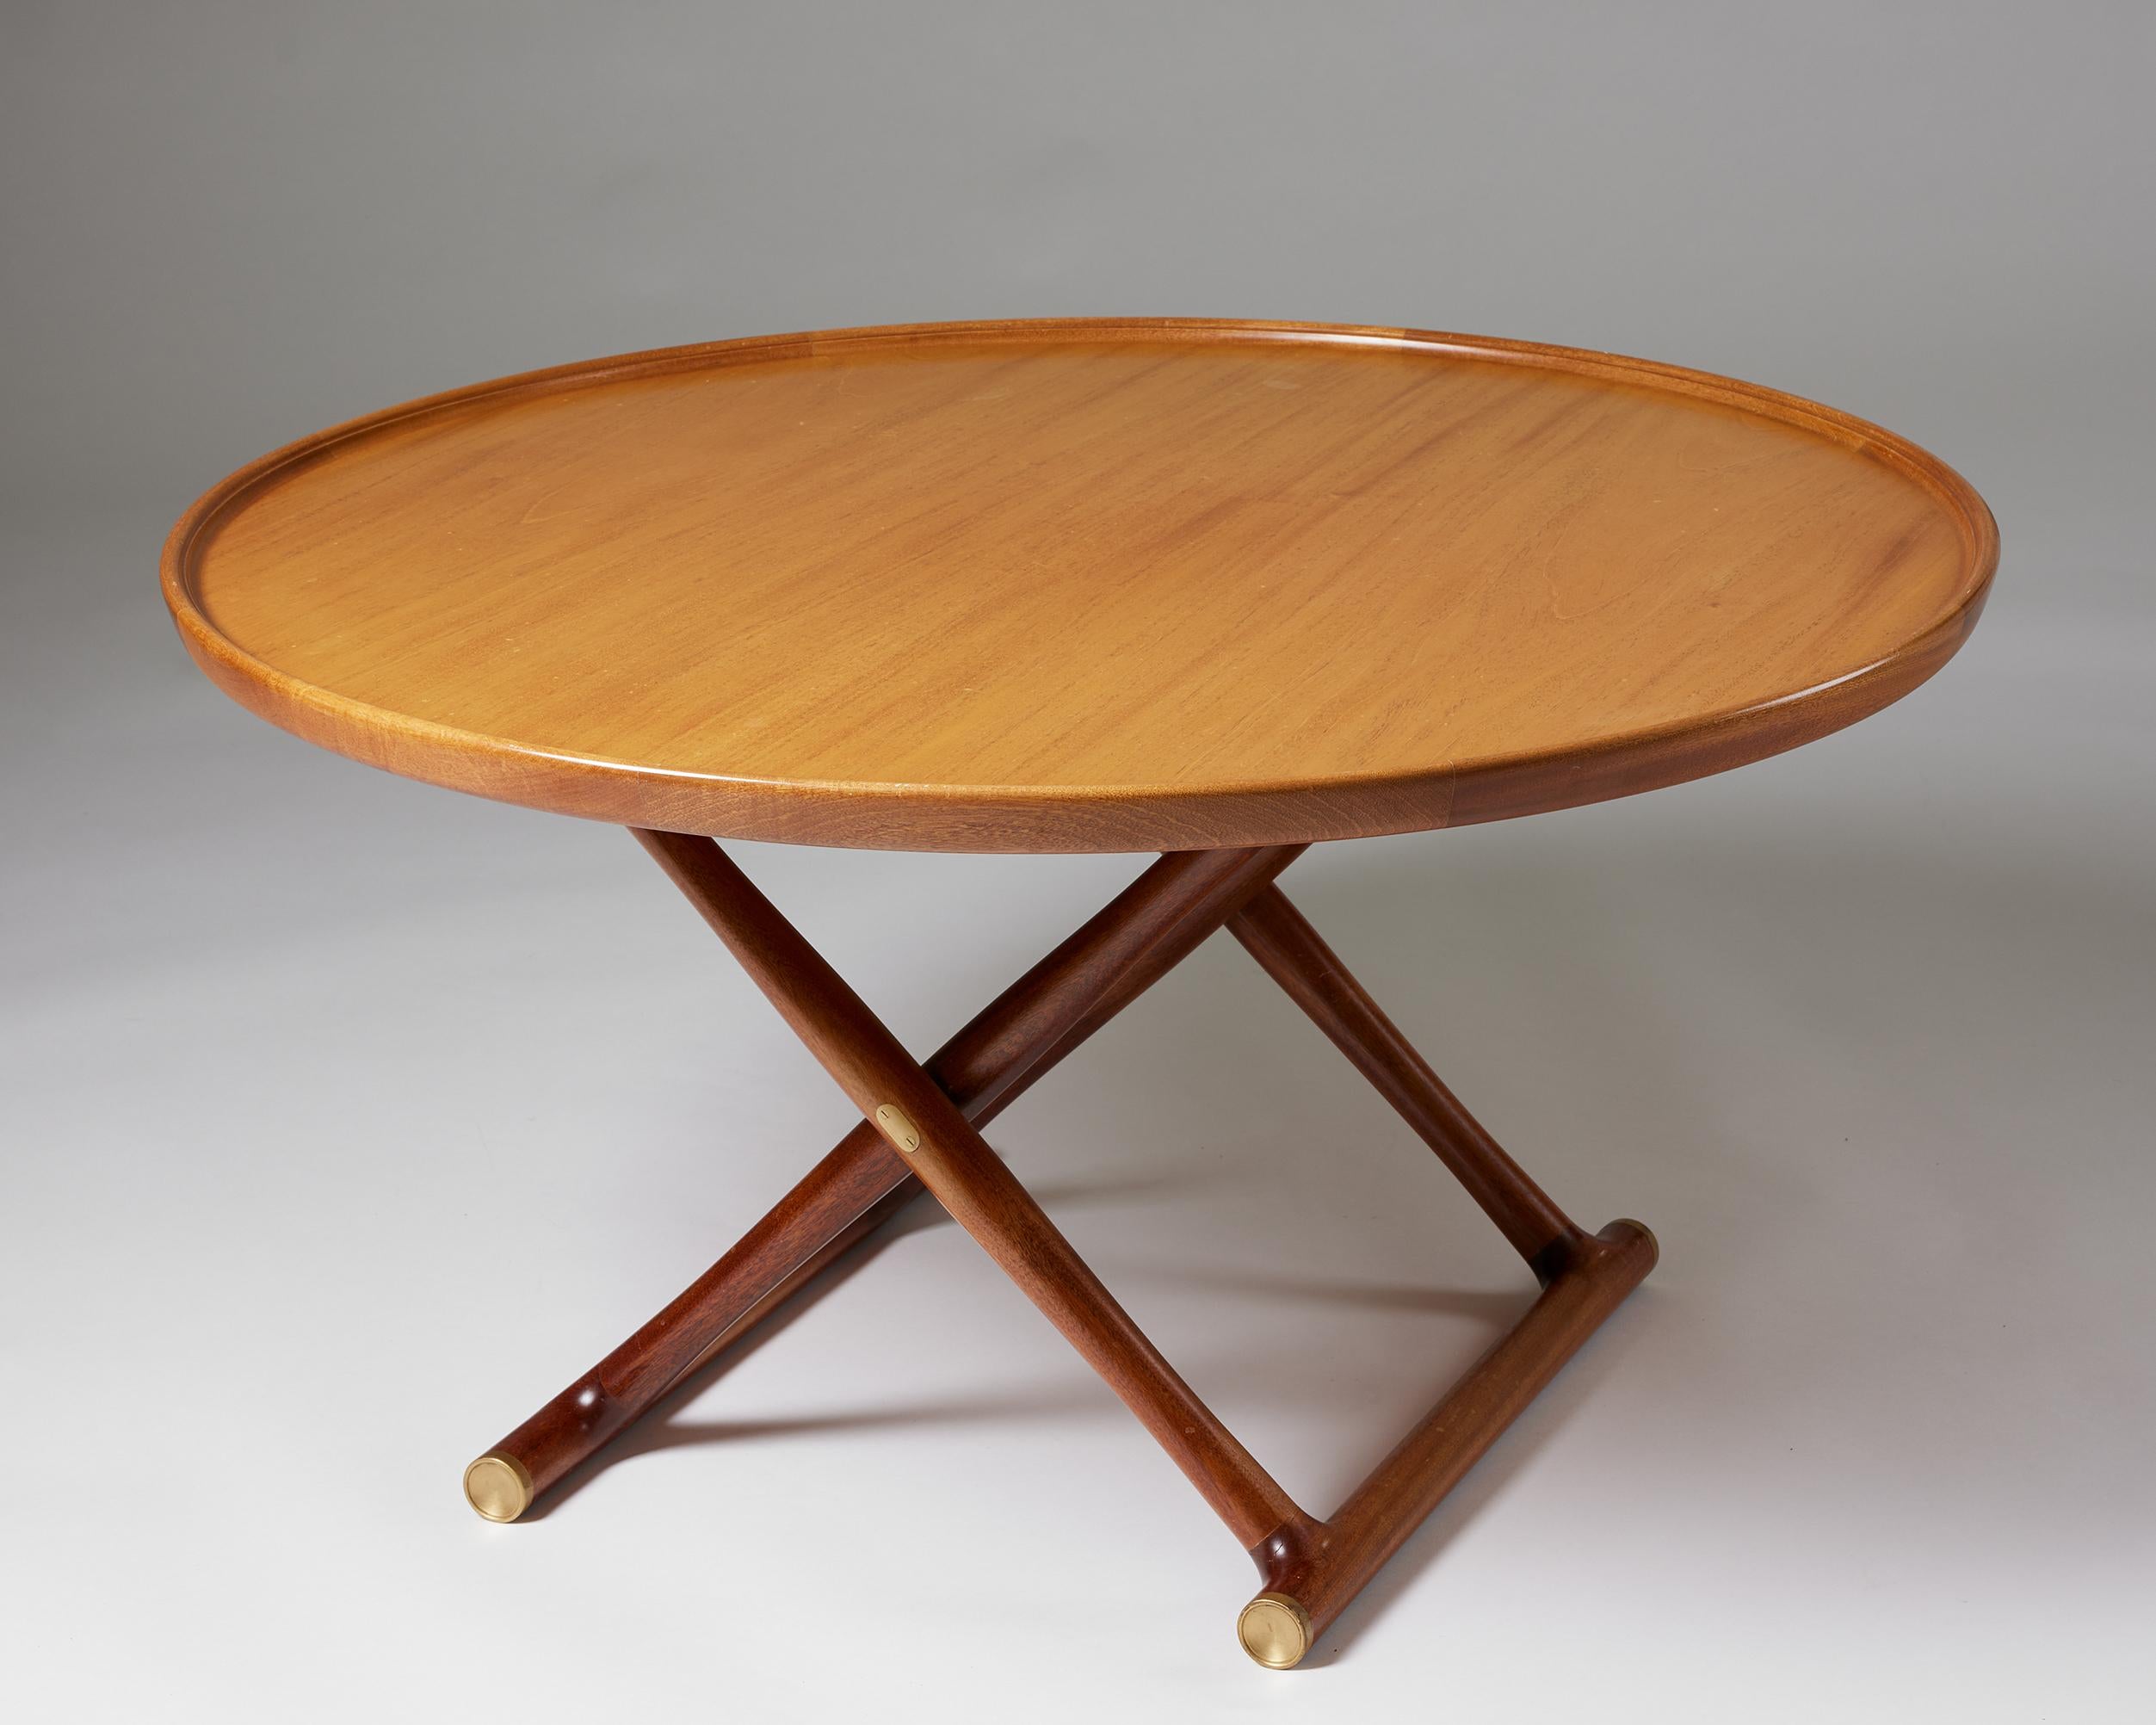 Brass ‘Egyptian Table’ Designed by Mogens Lassen for Rud. Rasmussen, Denmark, 1935